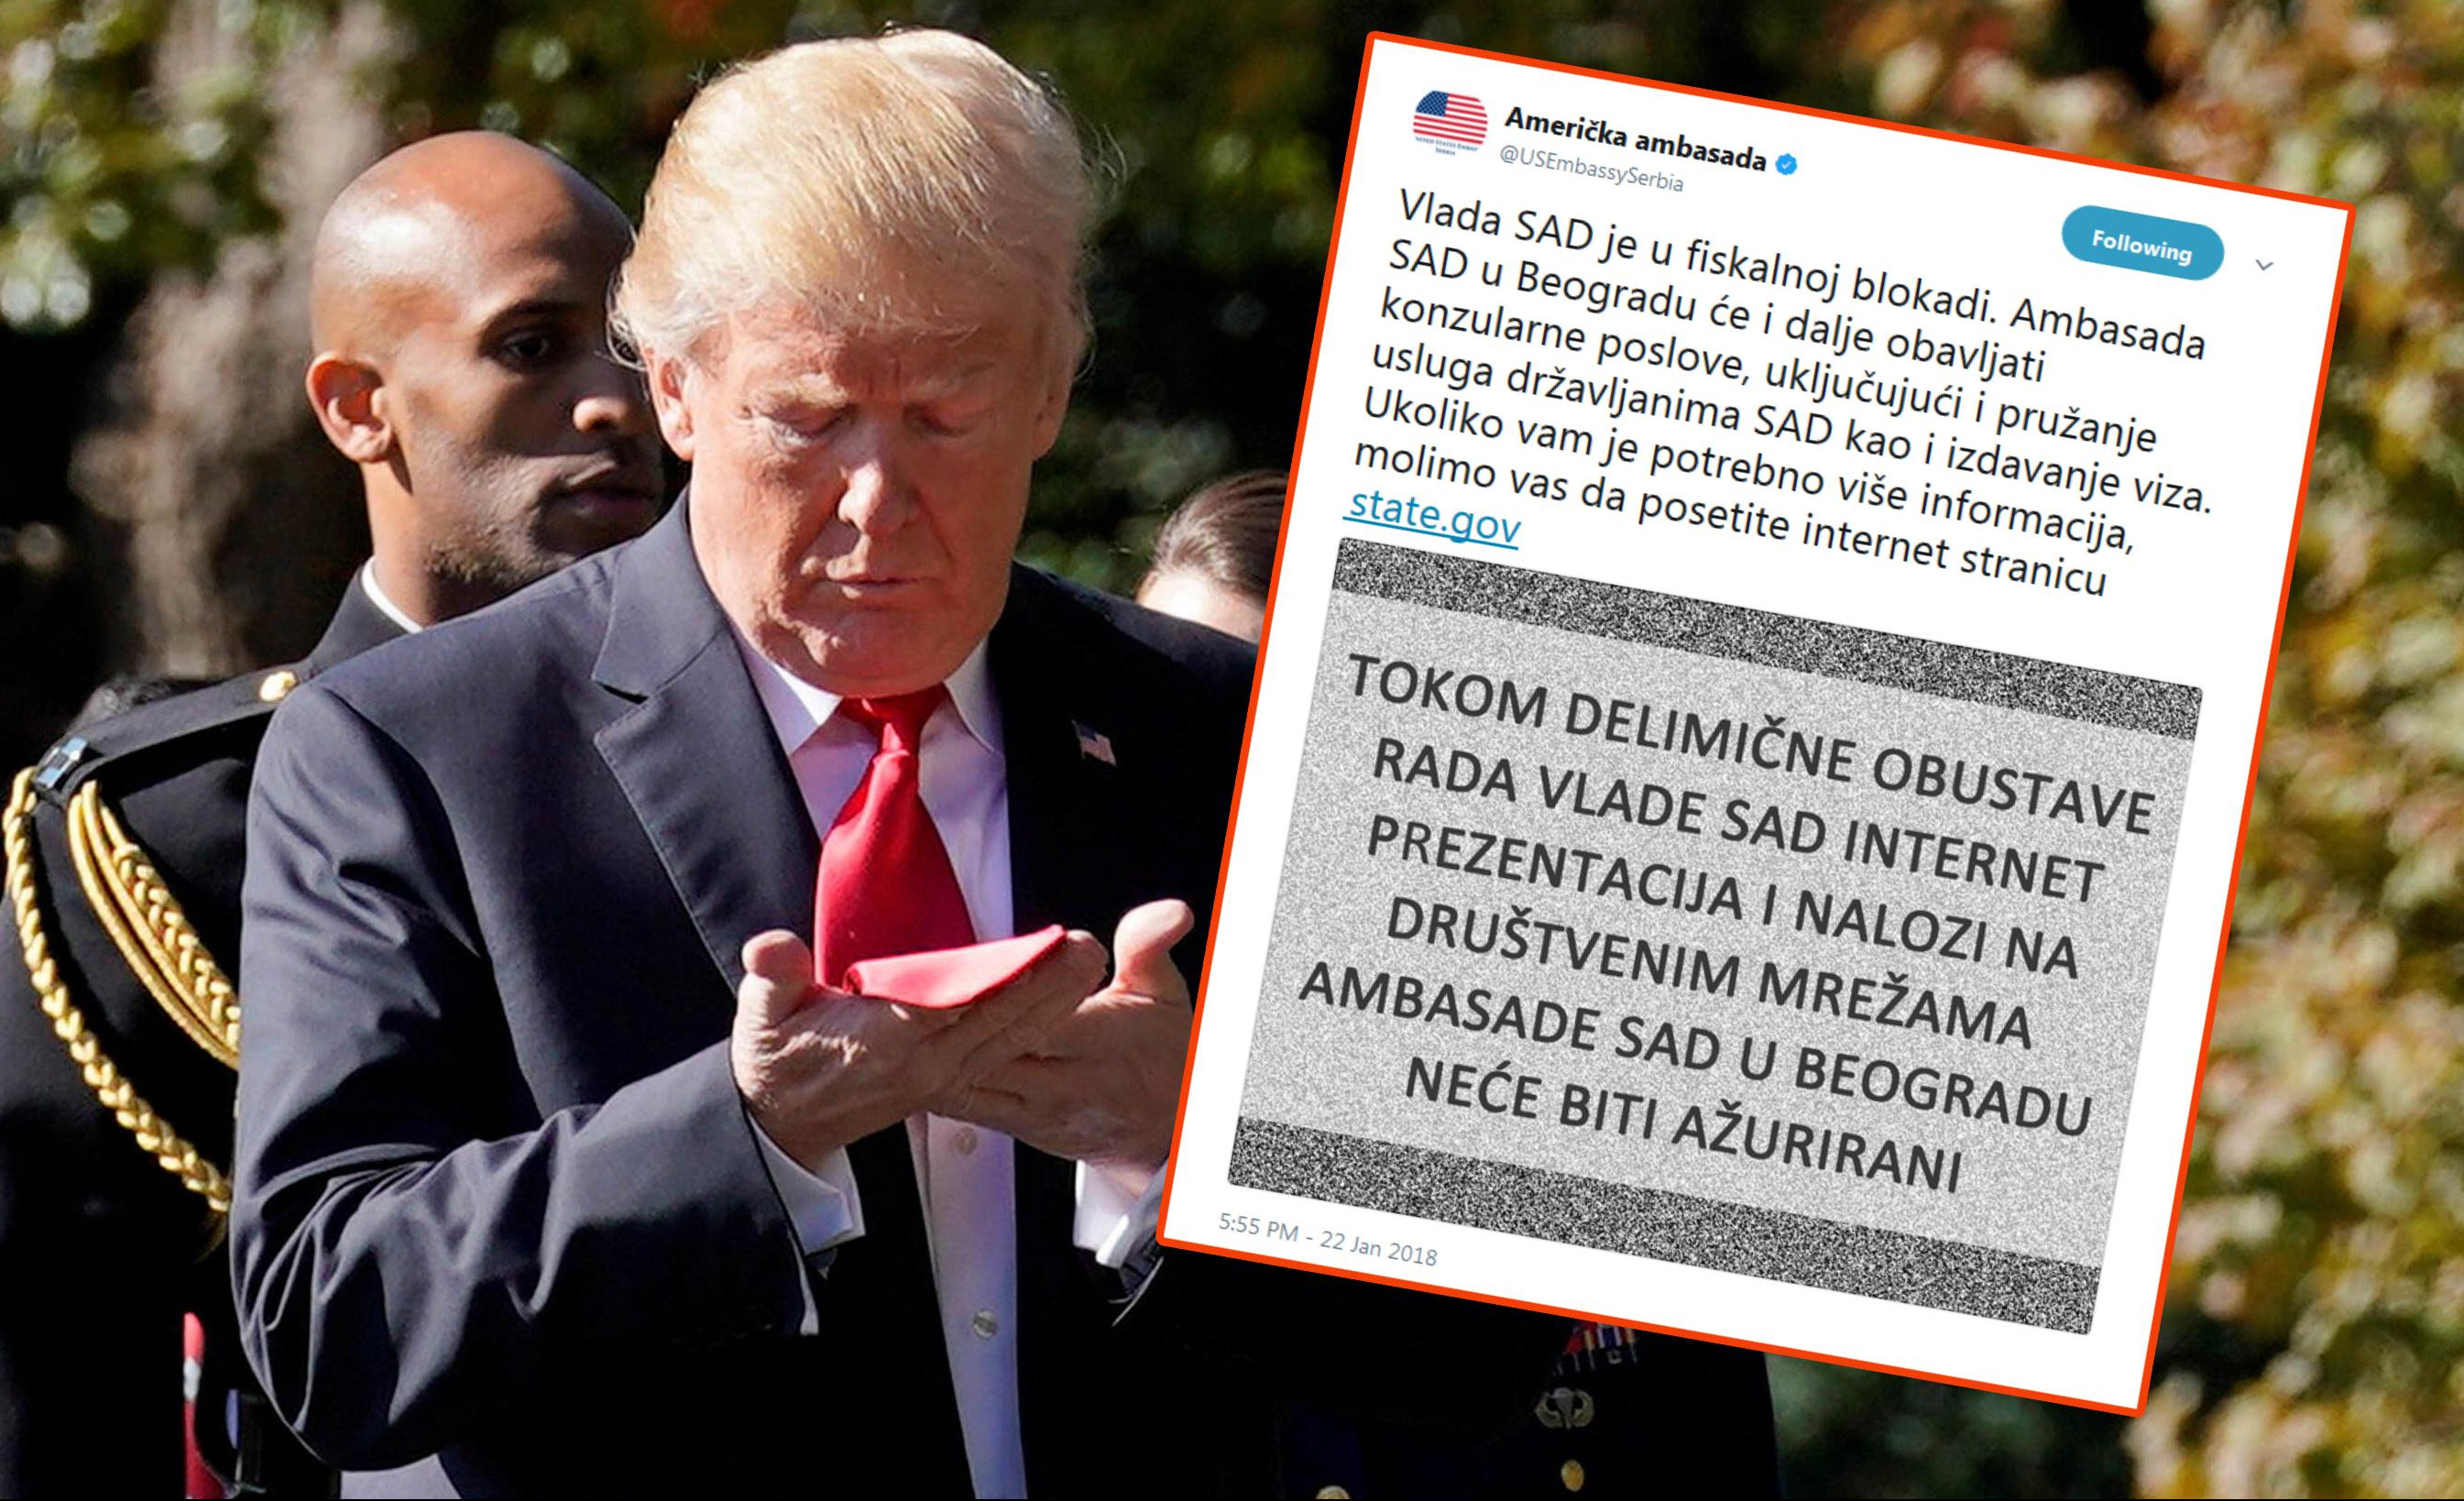 BANKROTIRALI! Ambasada SAD u Beogradu objavila da je AMERIKA U FINANSIJSKOJ BLOKADI!